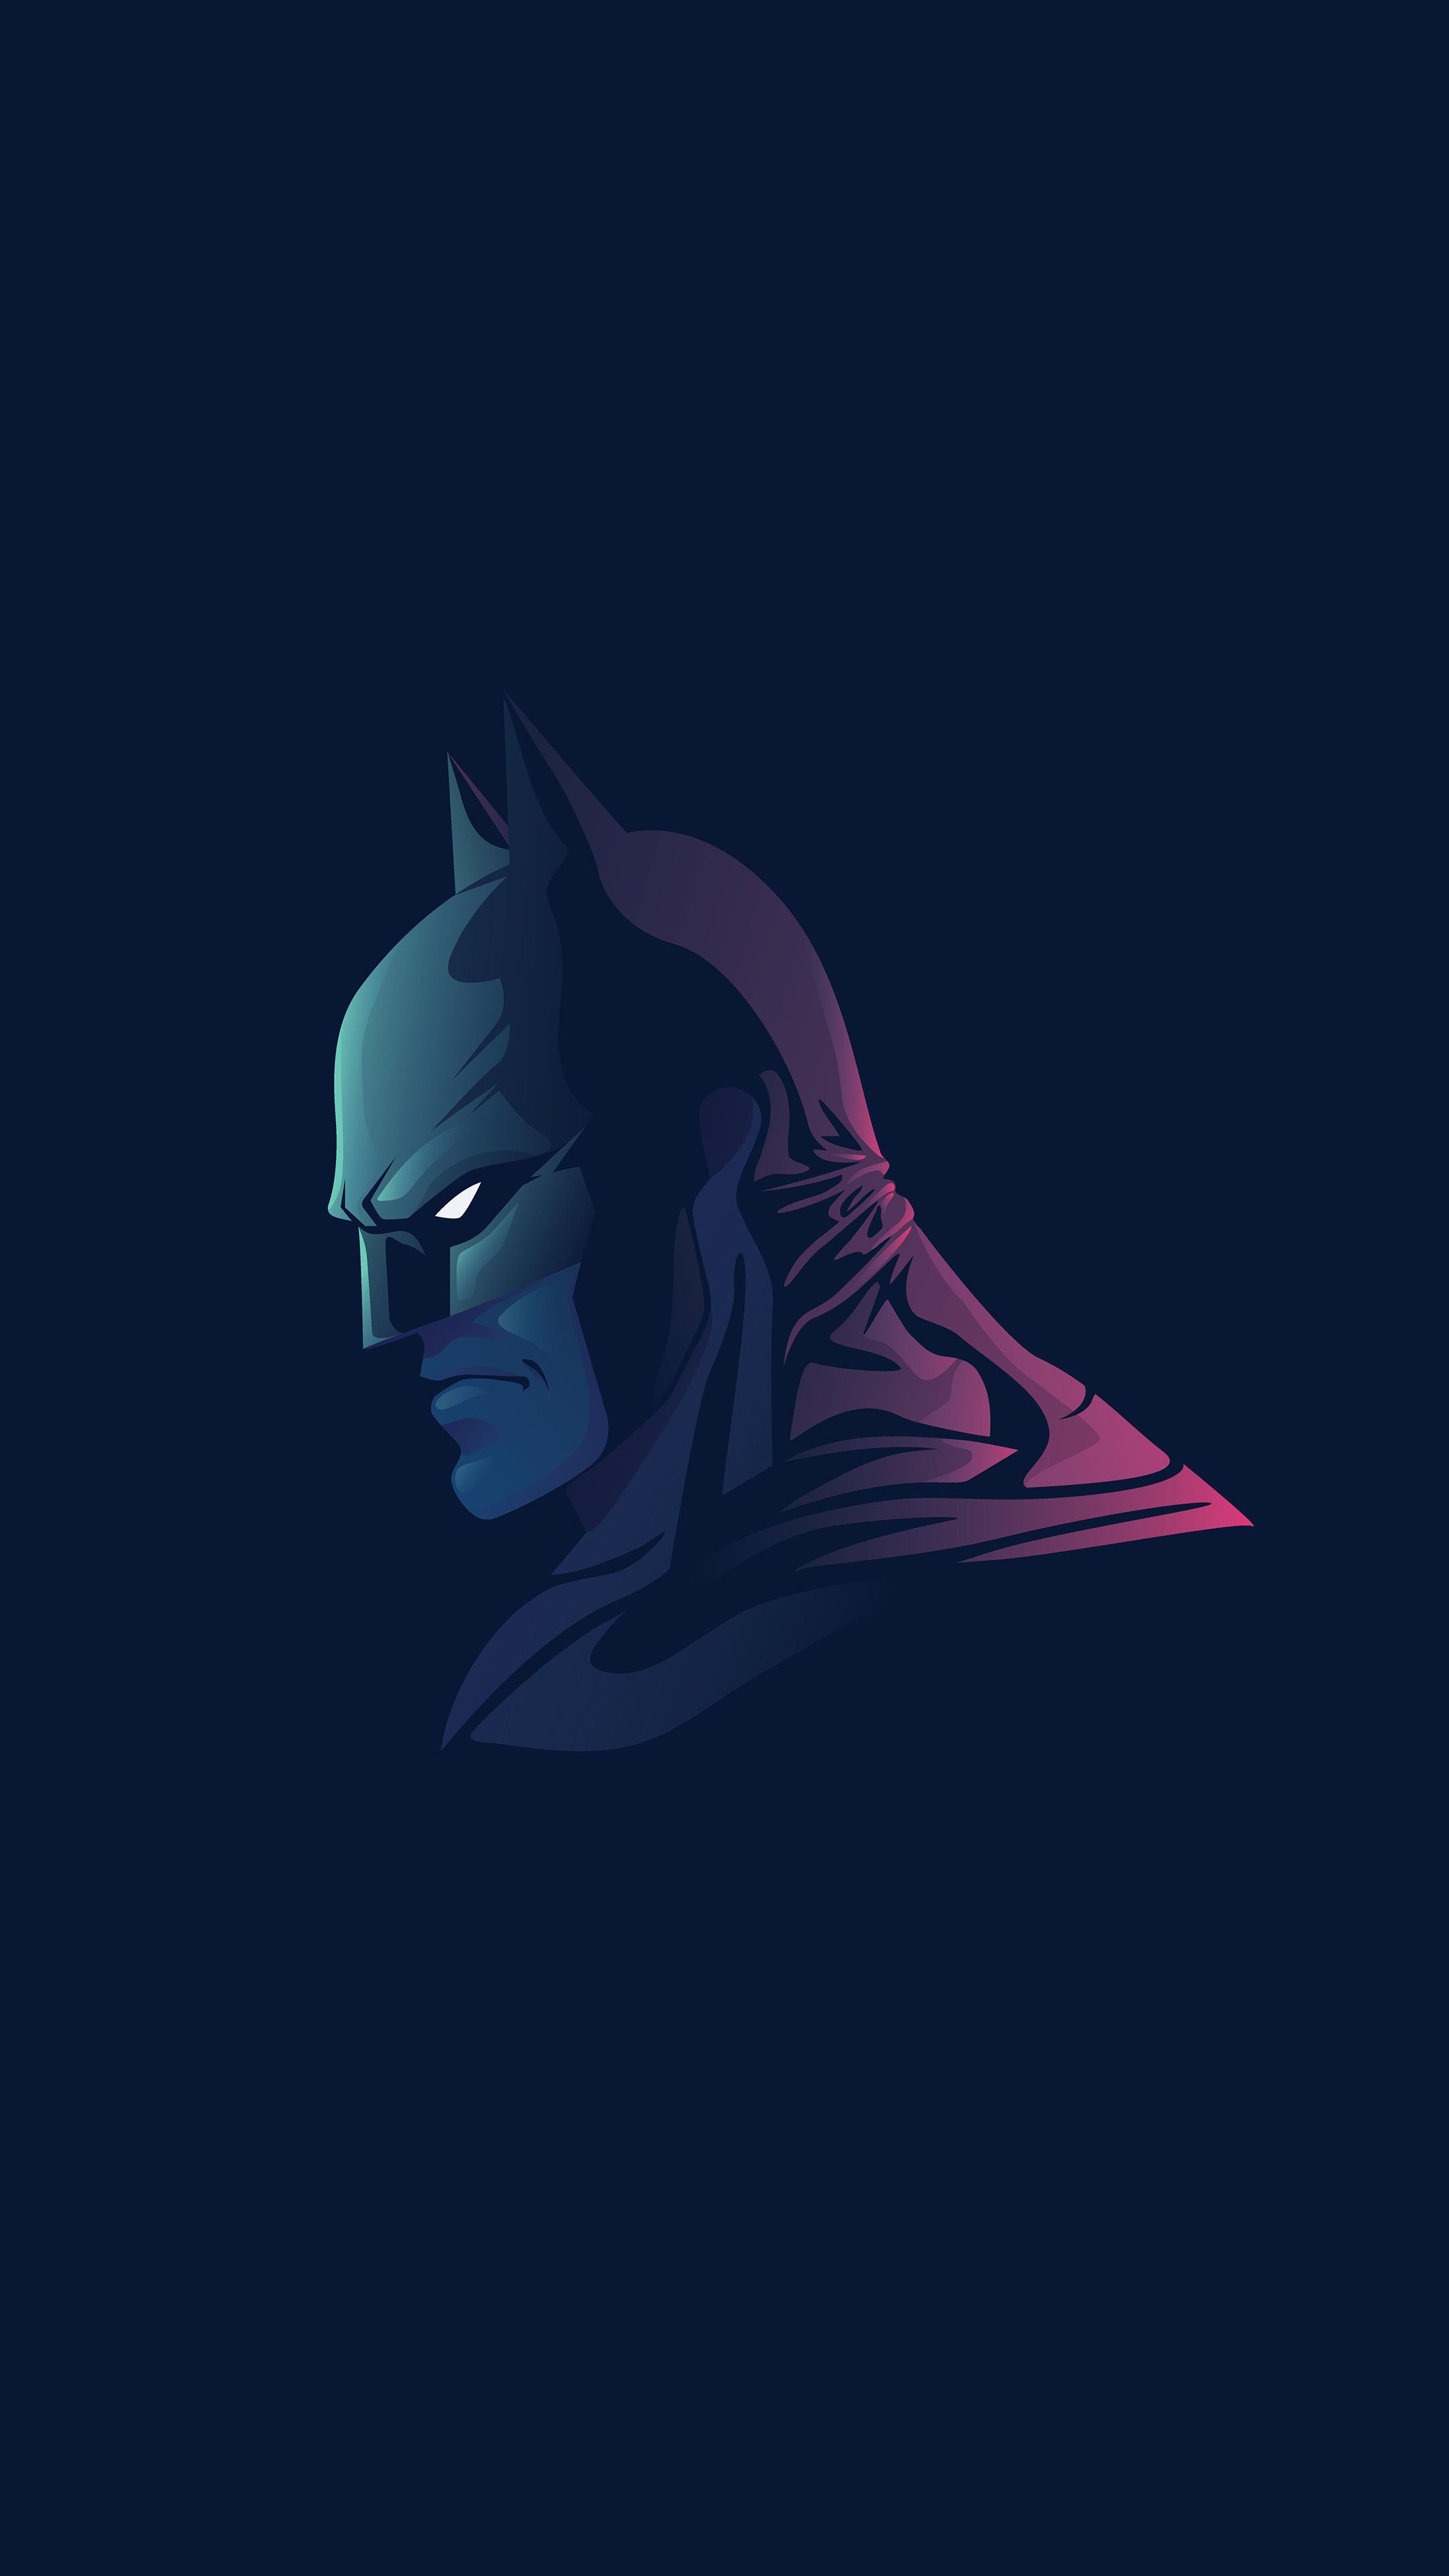 Batman The Dark Knight Minimal Sony Xperia X, XZ, Z5